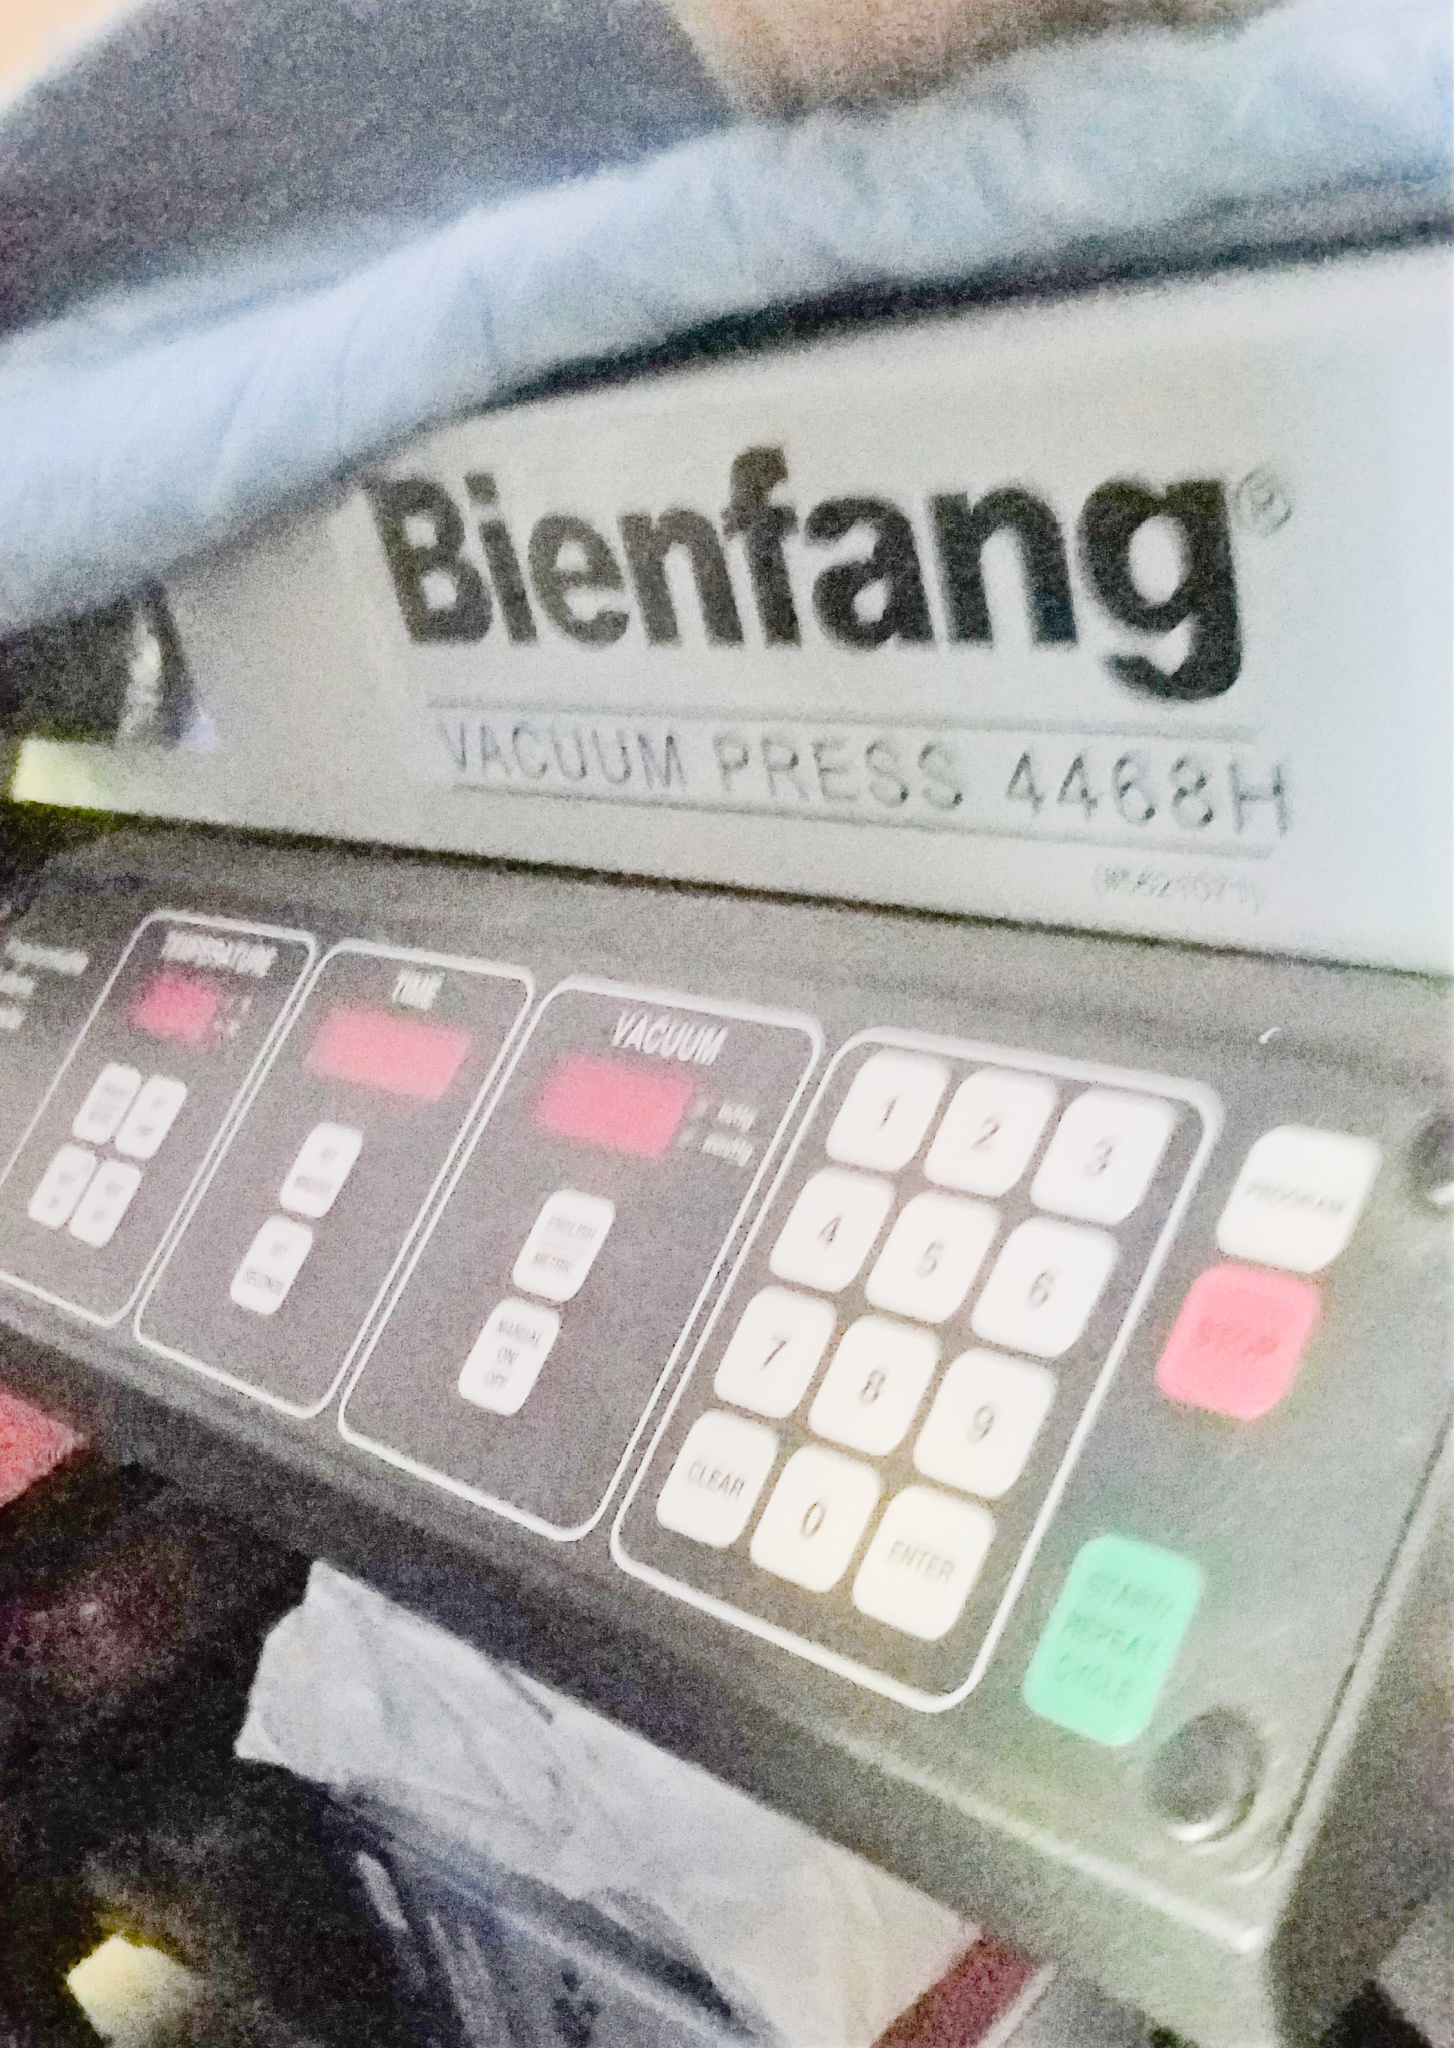 Bienfang / Vacuseal 4468H Vacuum Dry Mount Press (used) [Cumberland, Rhode Island] Item # UE-101122D